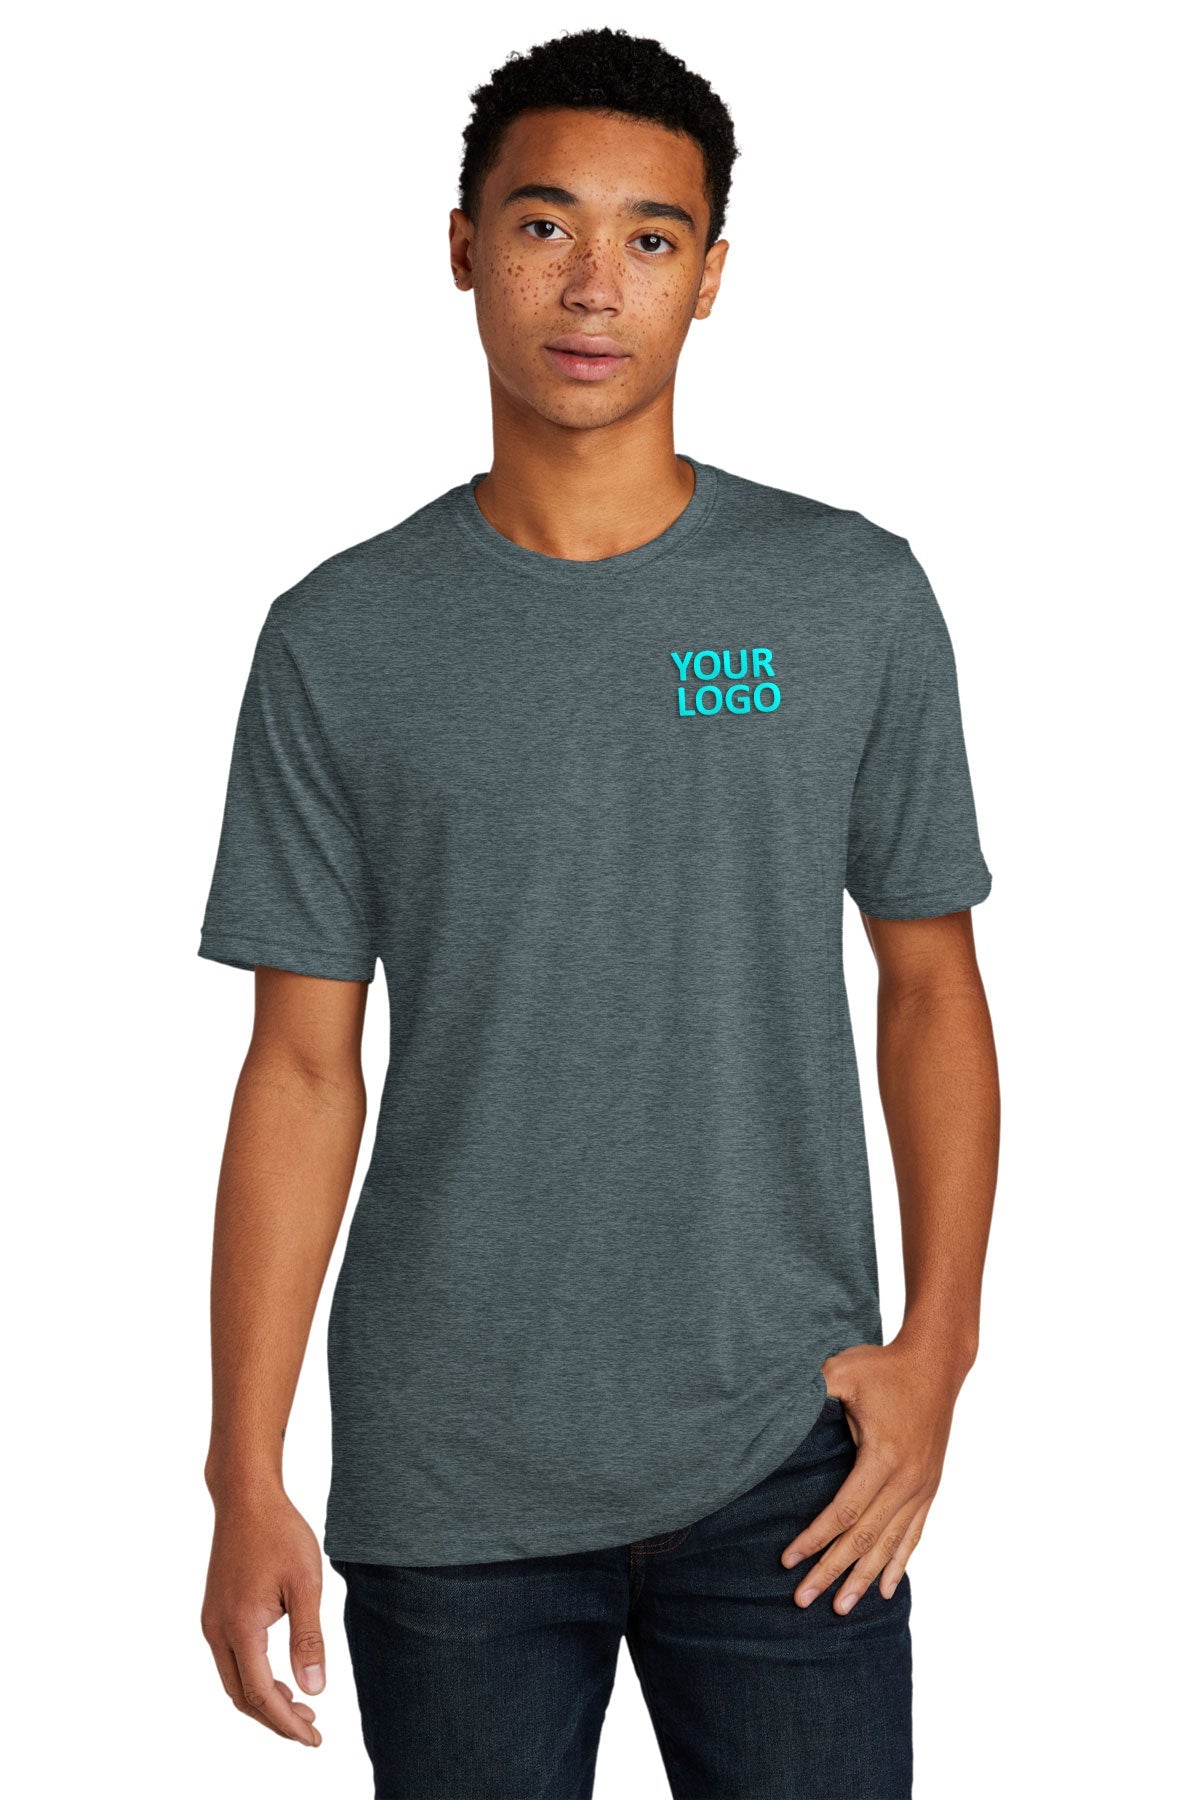 Next Level Unisex Poly Cotton Custom T-Shirts, Indigo